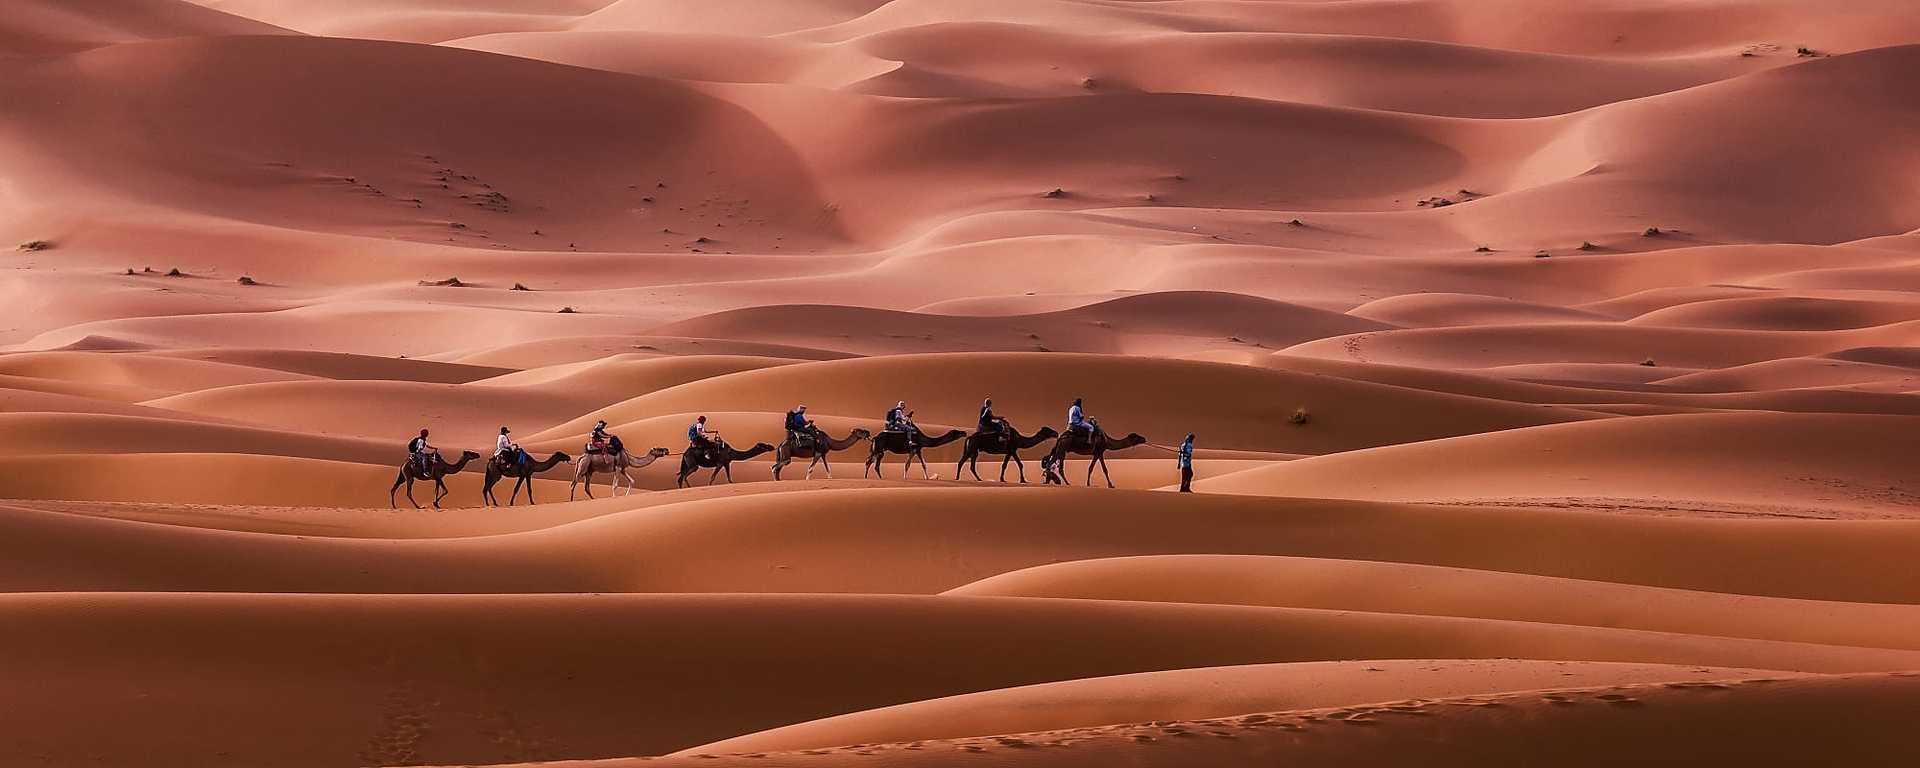 Caravan through the Erg Chebbi desert in Morocco